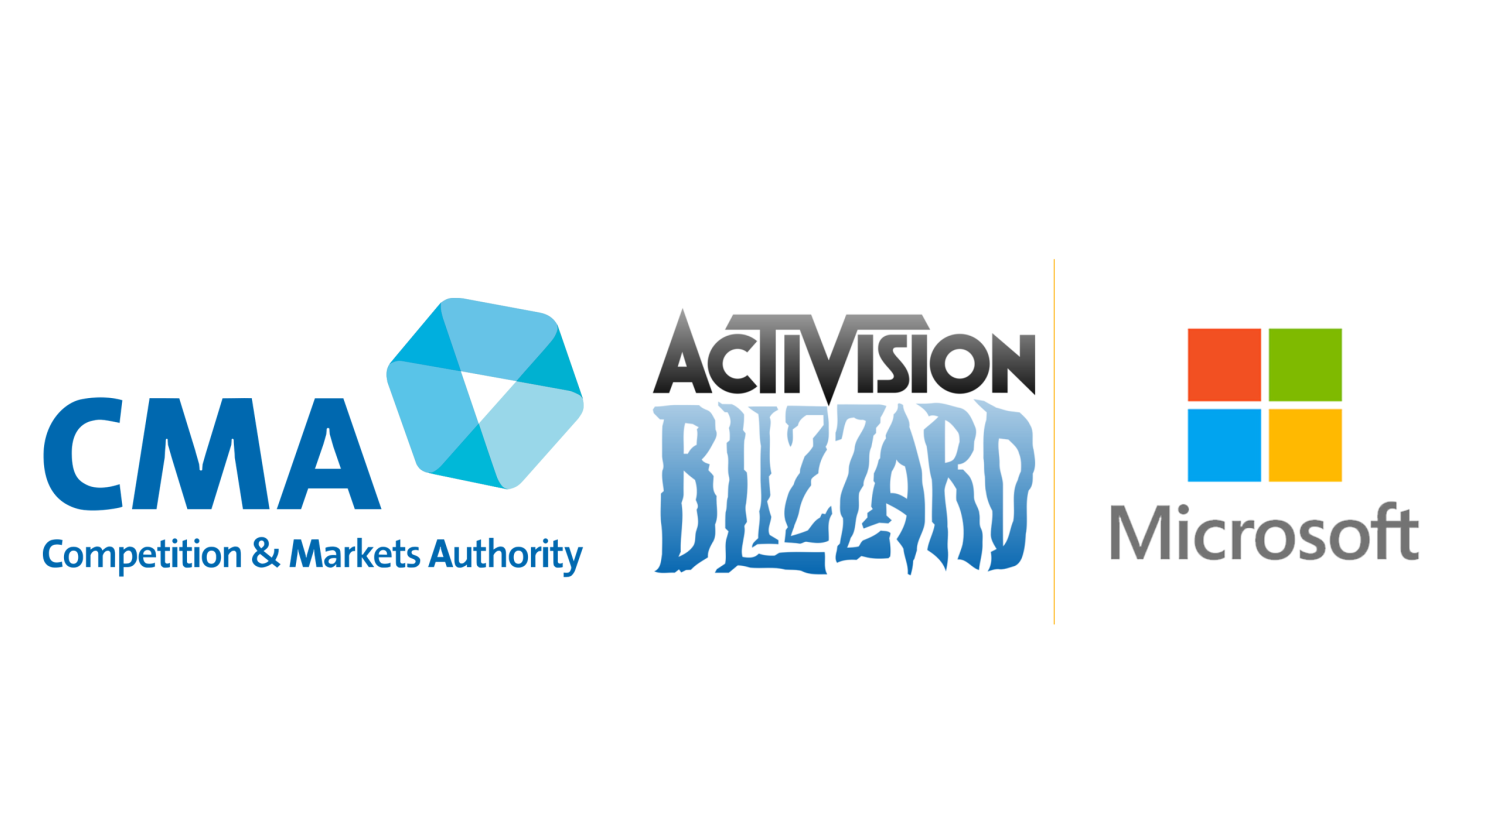 CMA udskyder endelig beslutning om Microsoft og Activision Blizzard-aftale til 29. august